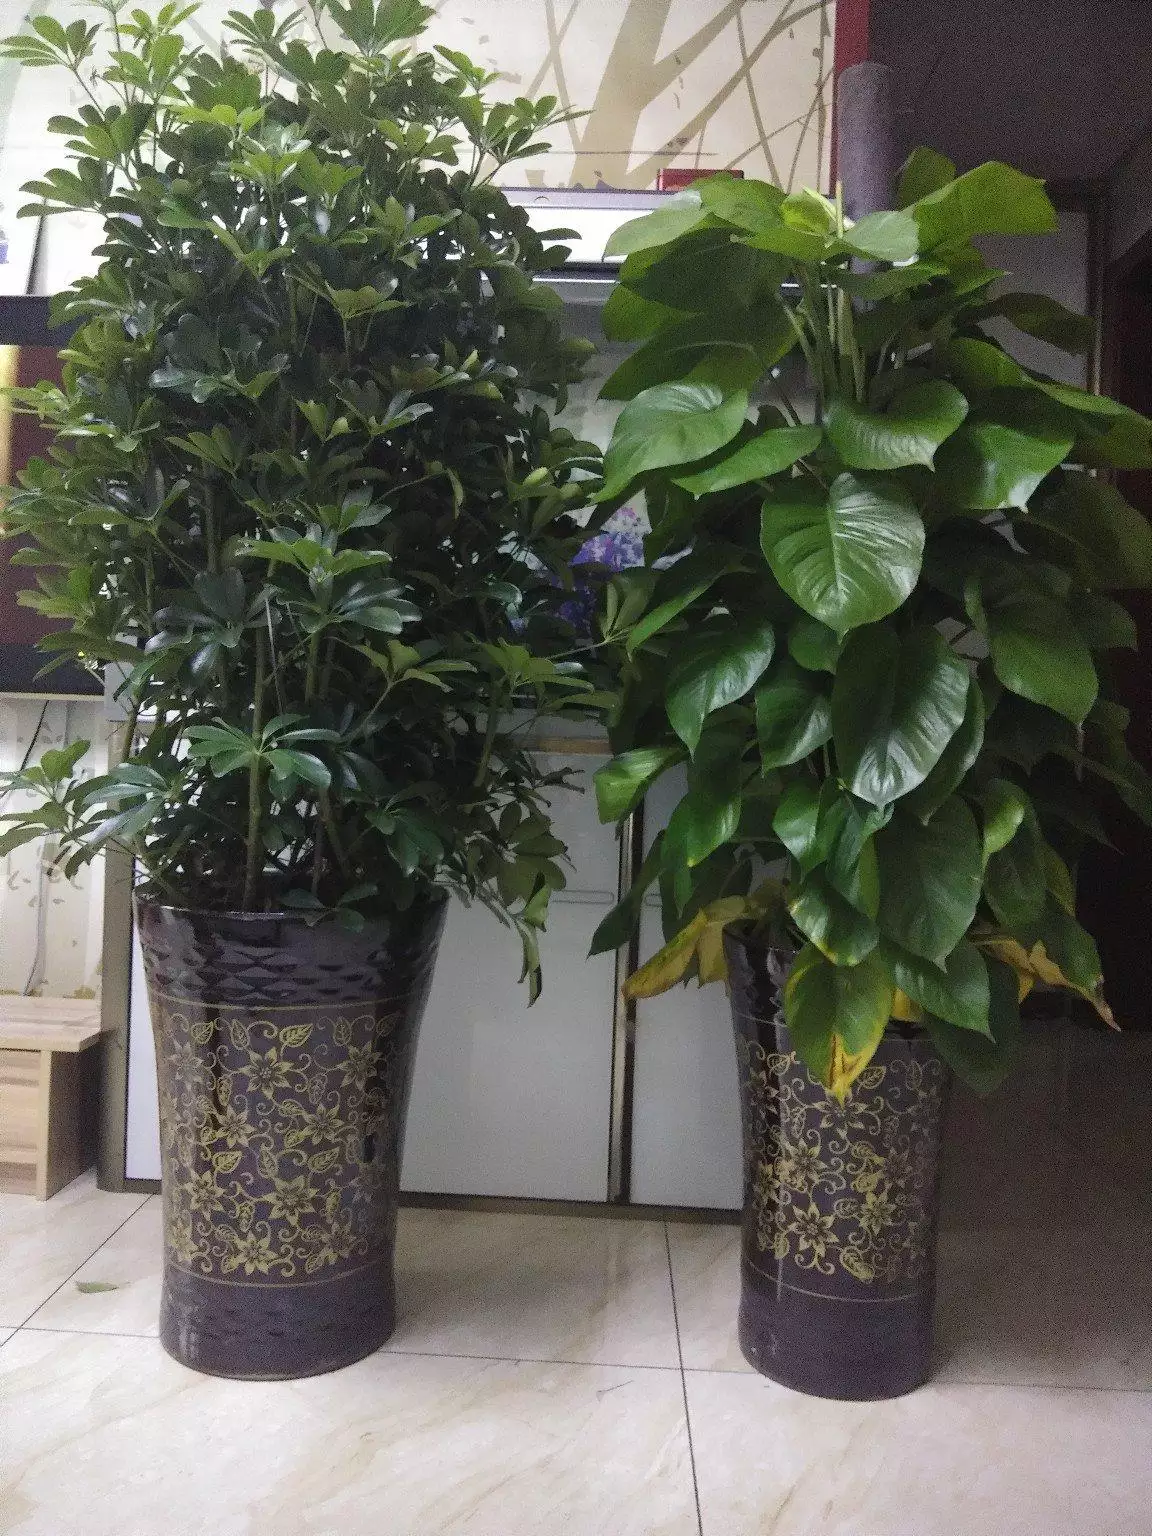 2、适合办公室的10大植物:最适合在办公室养的10种绿植是哪些